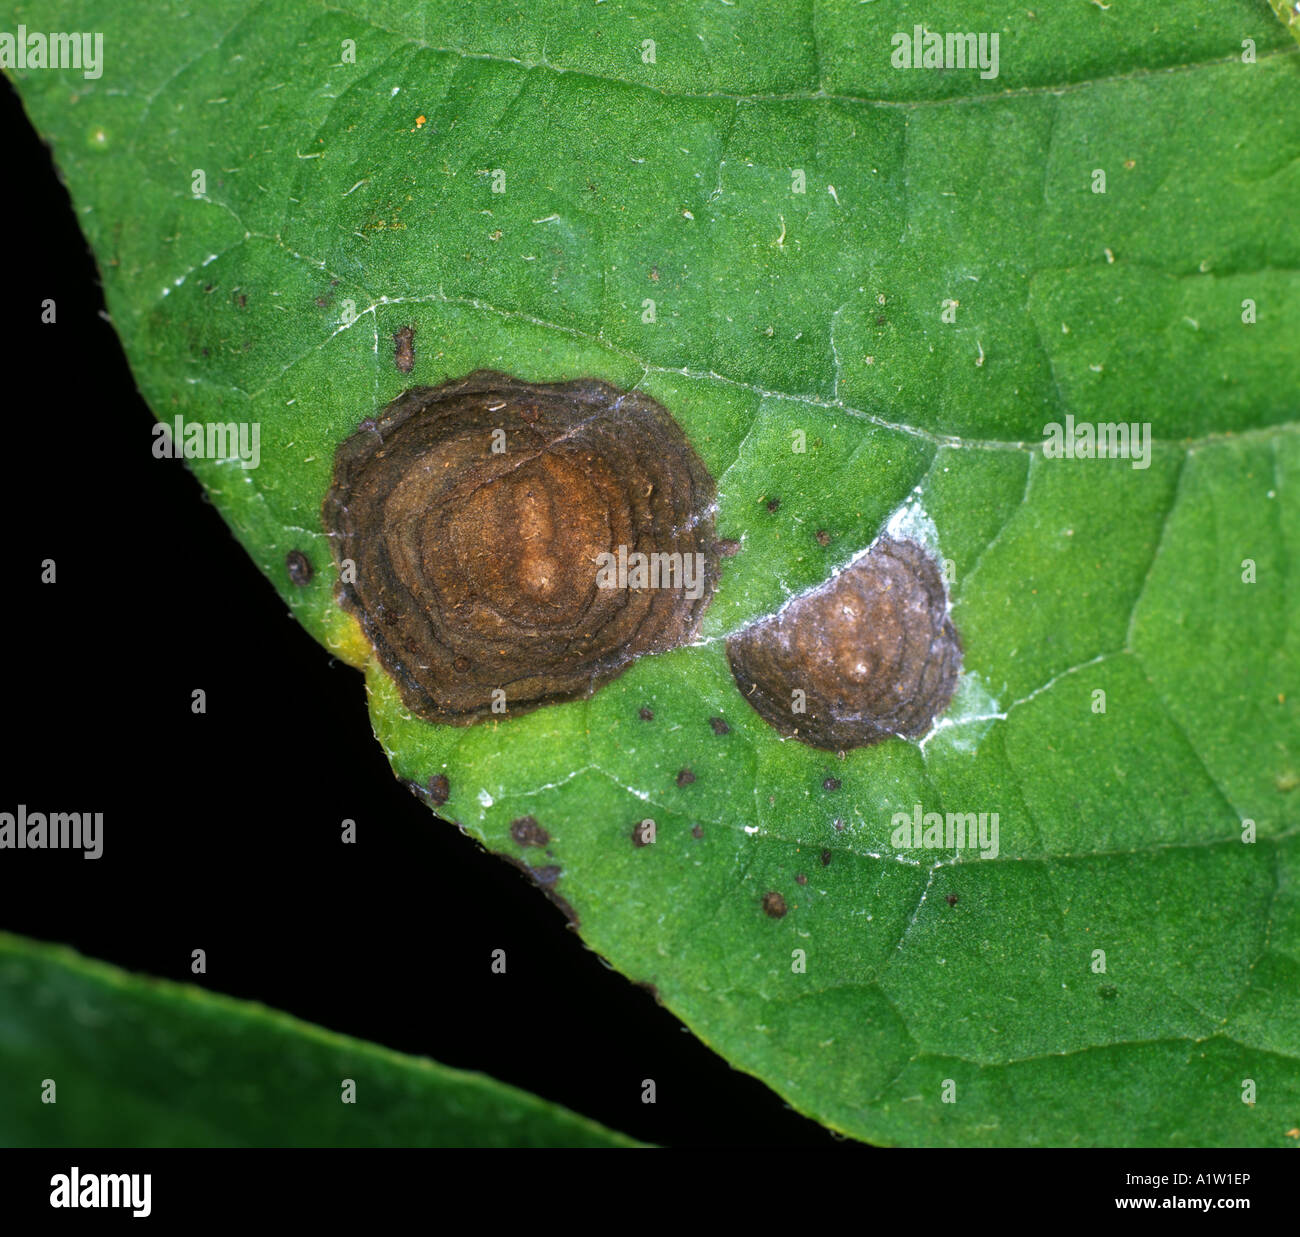 Potato early blight Alternaria alternata target spot lesion on a potato leaf Stock Photo